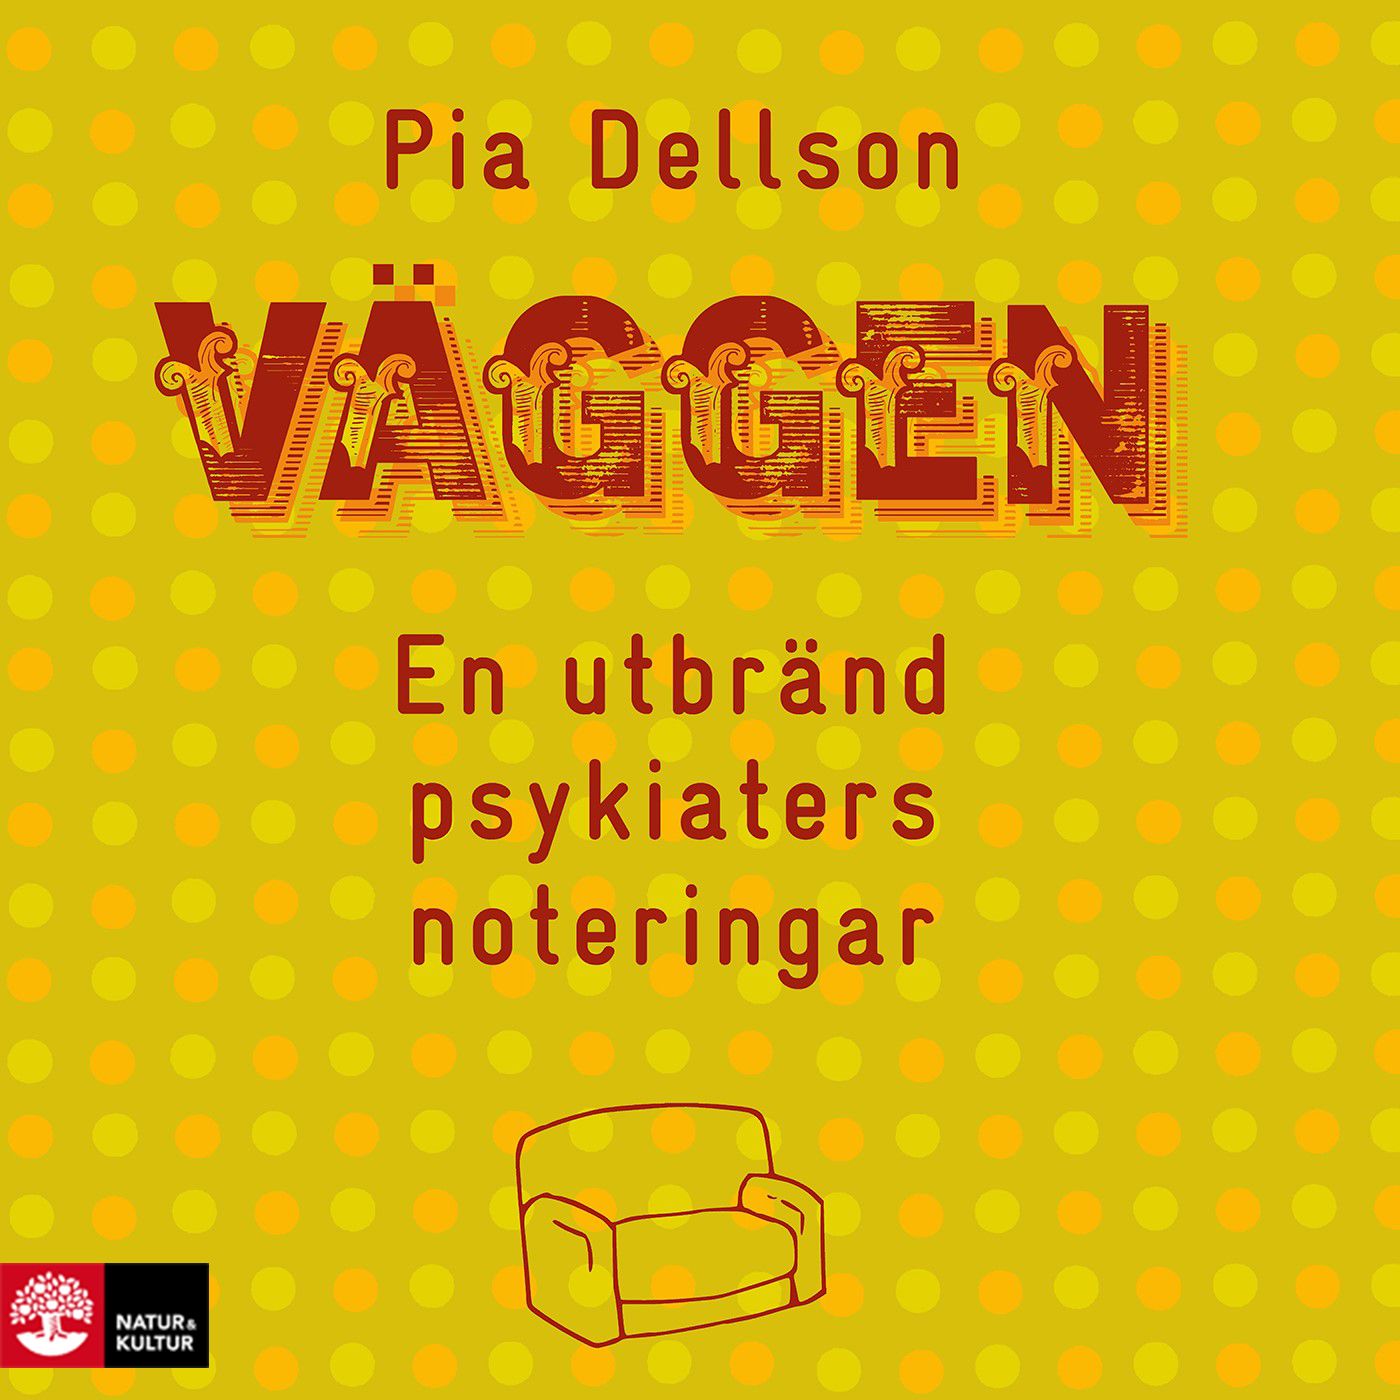 Väggen : en utbränd psykiaters noteringar, audiobook by Pia Dellson